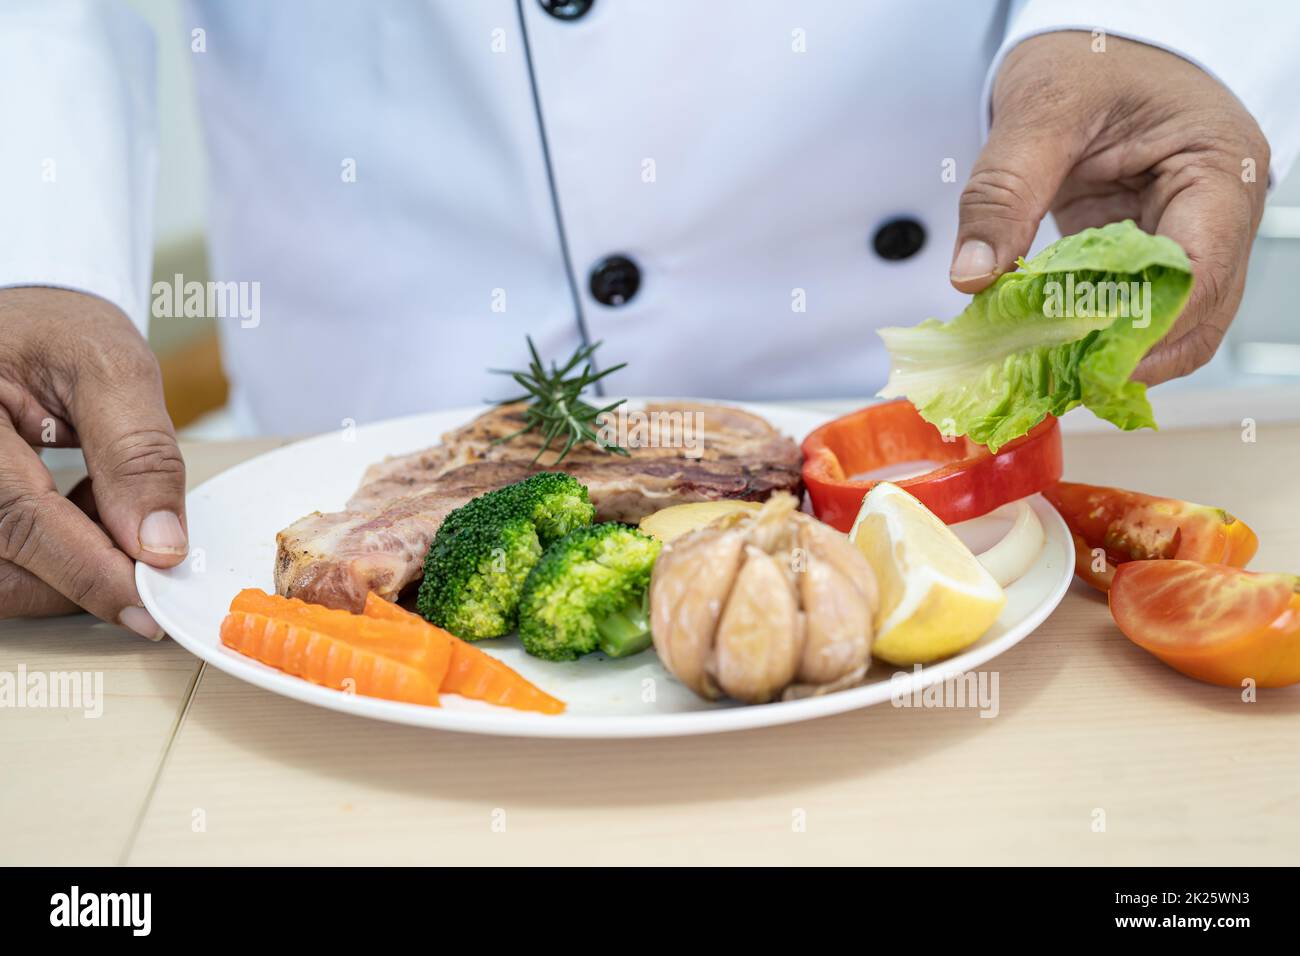 Le chef prépare et prépare une assiette de steak de porc et de salade dans la cuisine de l'hôtel ou du restaurant. Banque D'Images